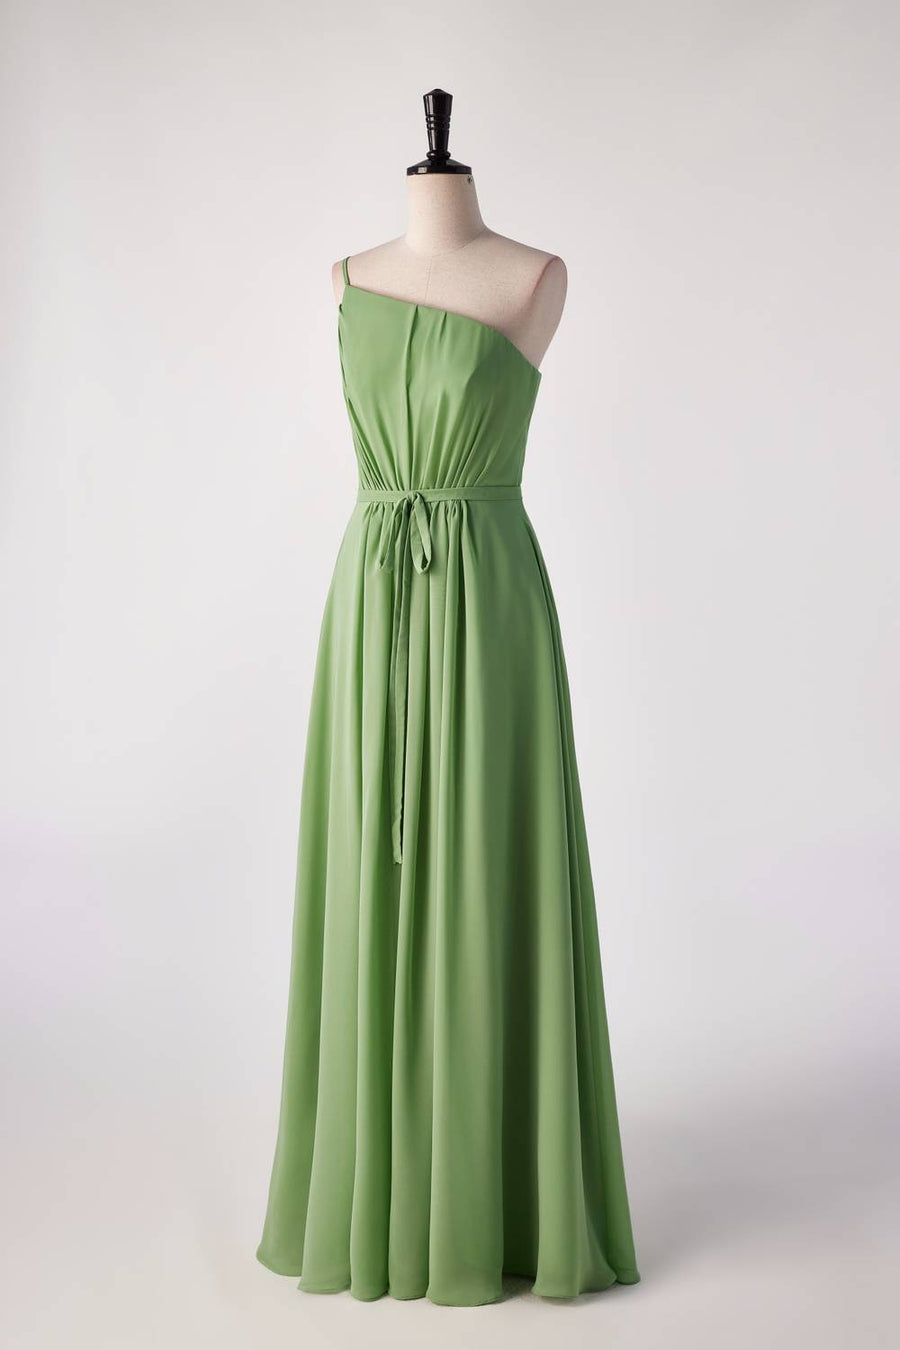 One Shoulder Matcha Green Long Bridesmaid Dress with Sash